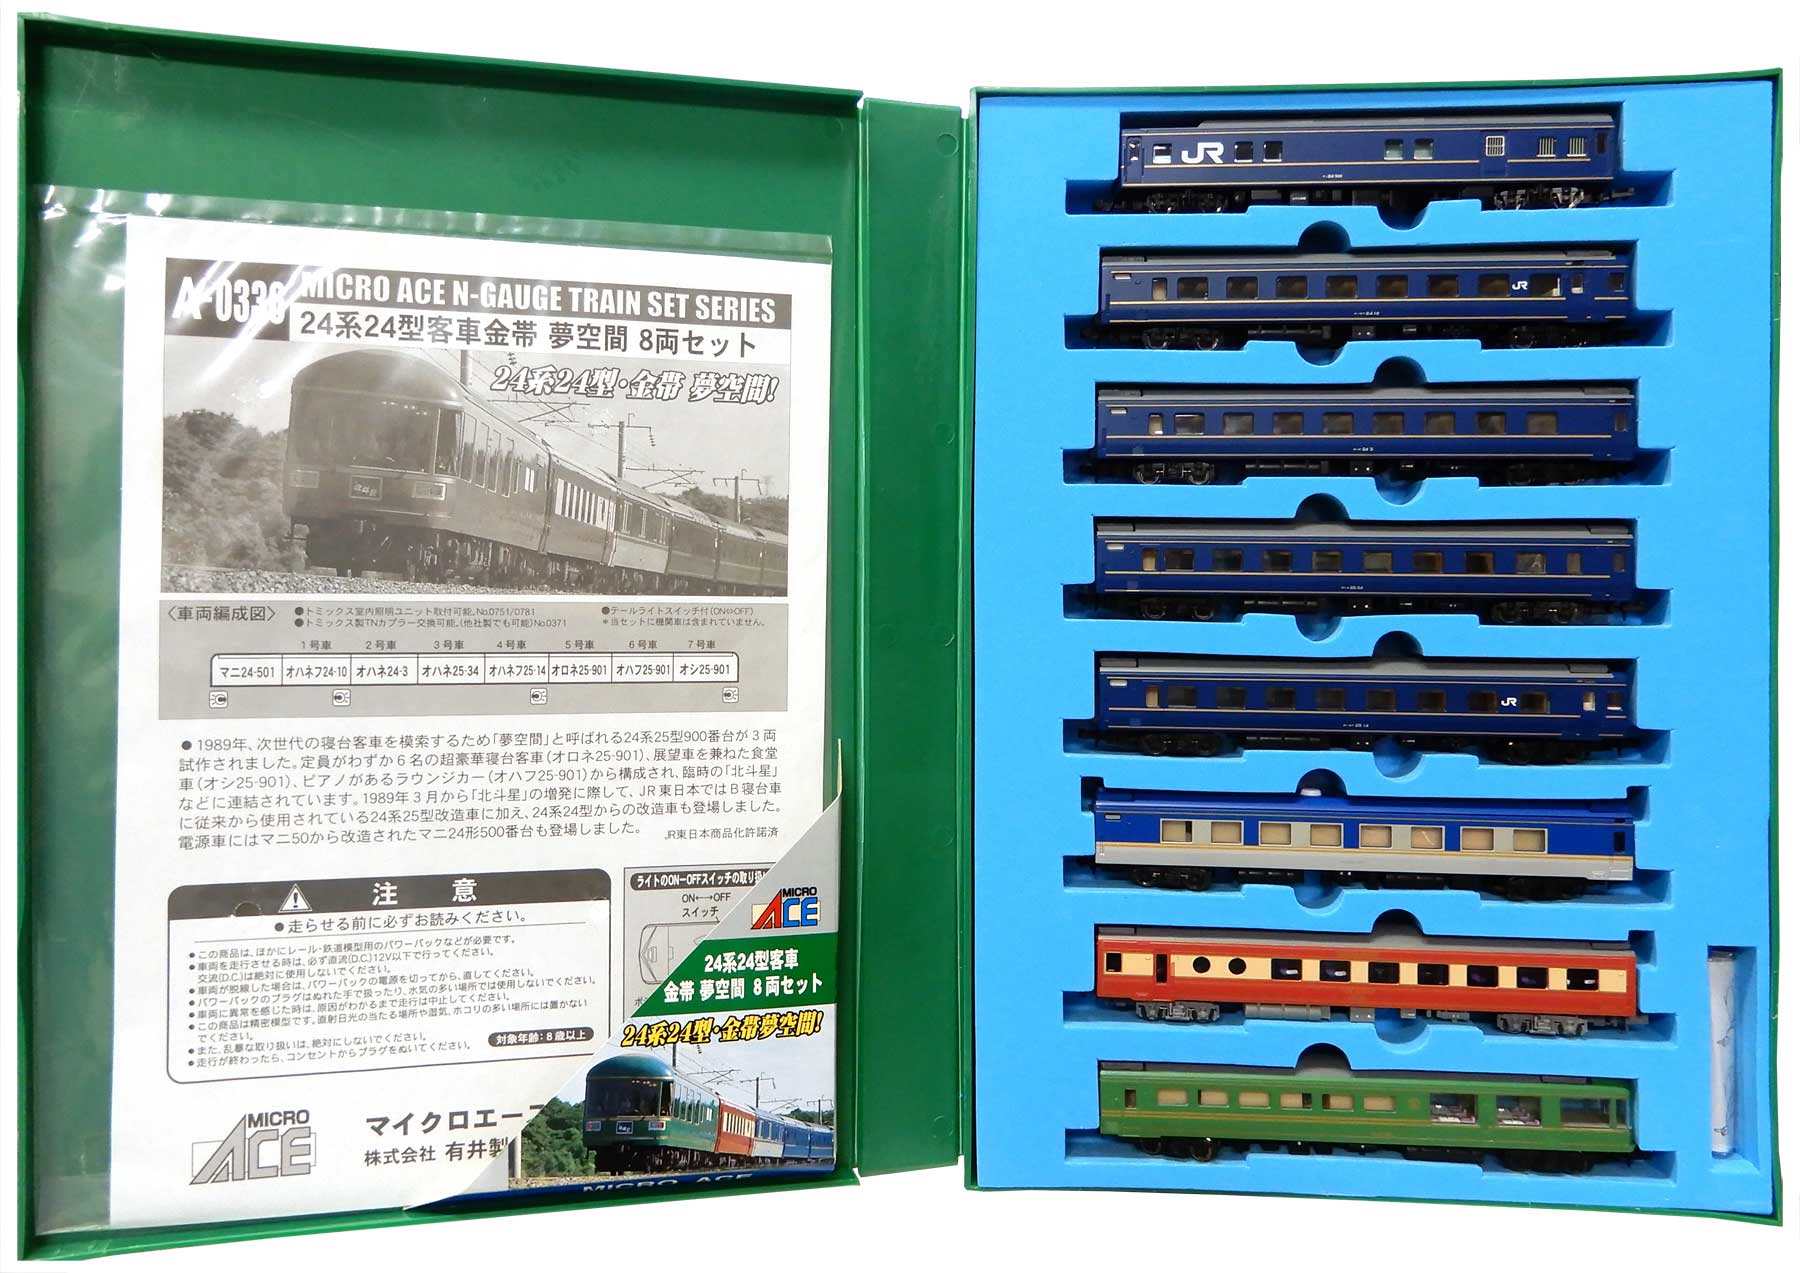 公式]鉄道模型(A033624系24型客車金帯 夢空間 8両セット)商品詳細 